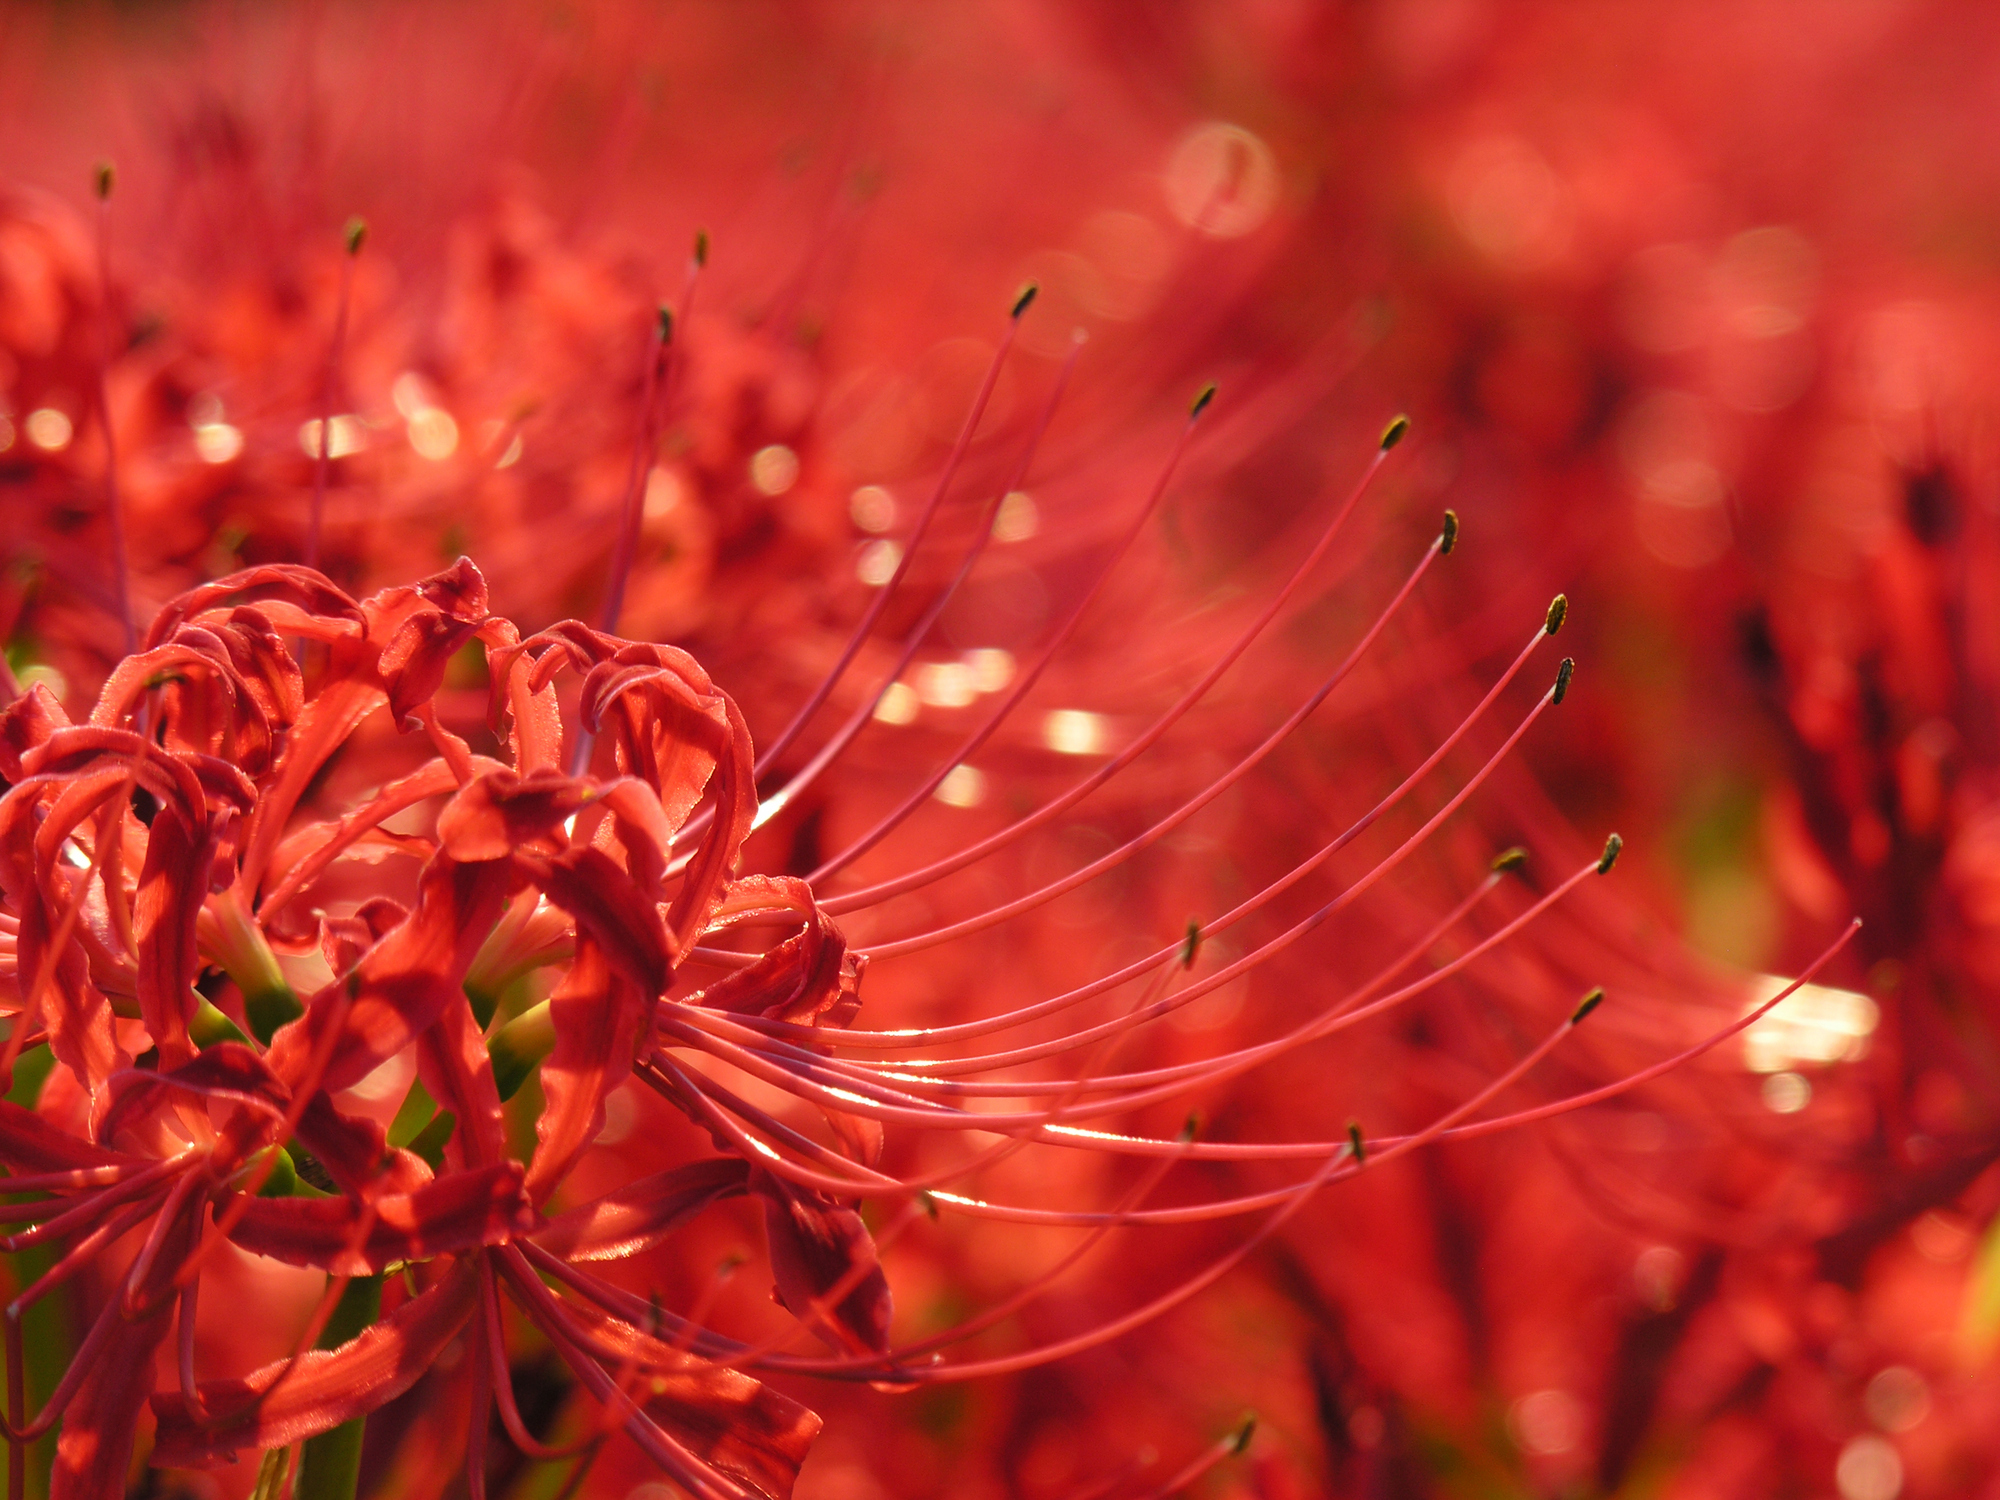 Lycoris radiata - Khám phá sắc đỏ rực rỡ của Lycoris radiata trong hình ảnh đầy mê hoặc. Hoa này được coi là biểu tượng của tình yêu và sự may mắn trong văn hóa Nhật Bản. Tận hưởng nguồn cảm hứng mới từ những cánh hoa này cùng chúng tôi.